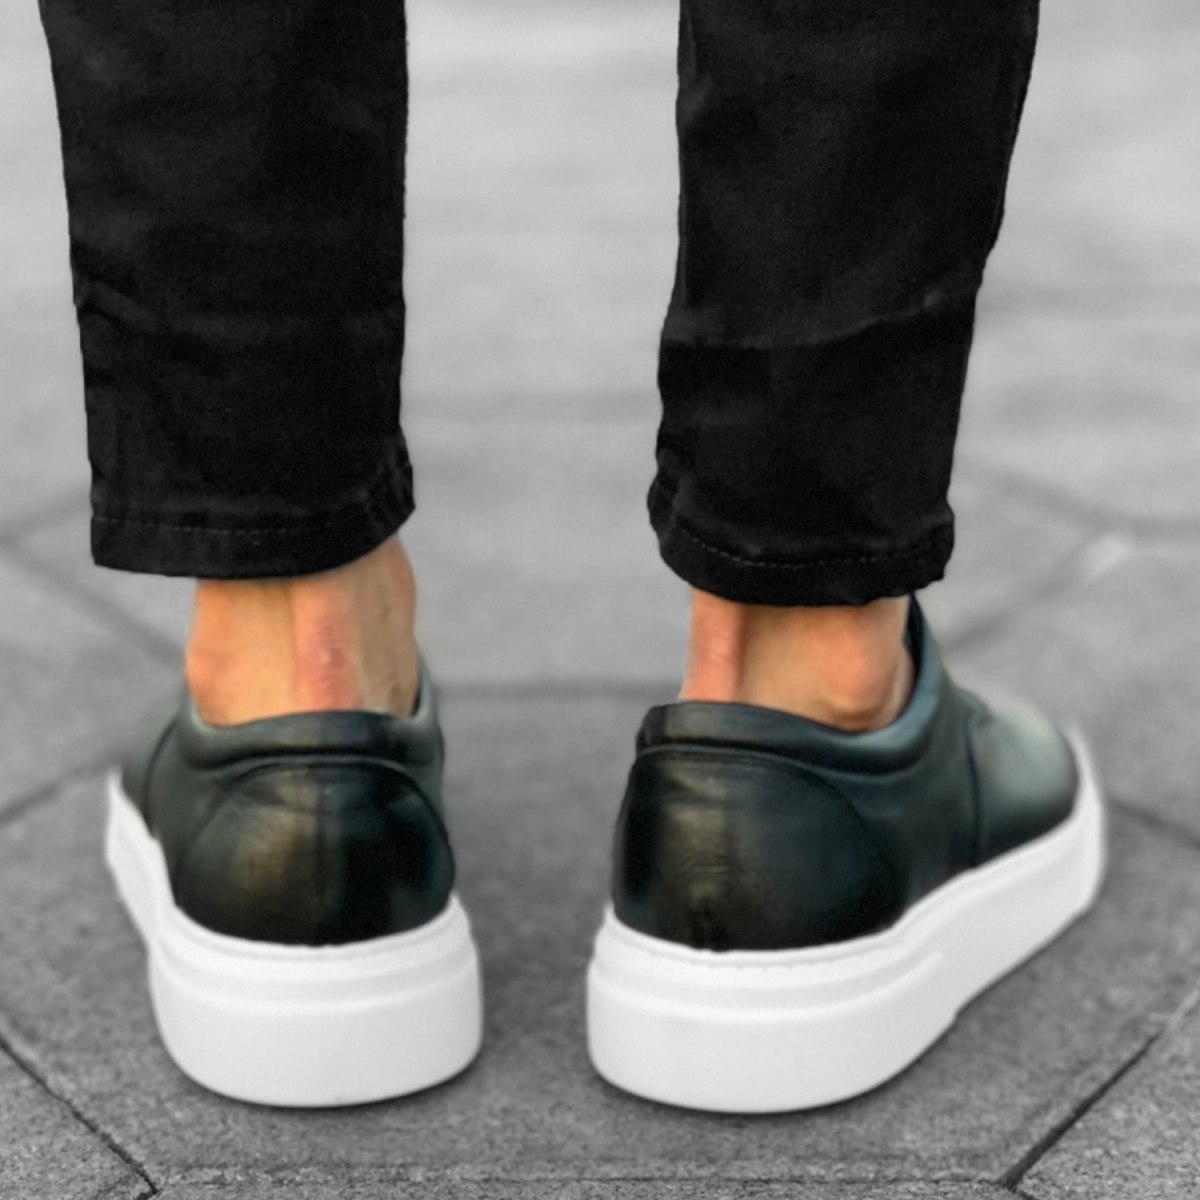 Herren Sneakers Leder Schuhe in schwarz-weiss | Martin Valen